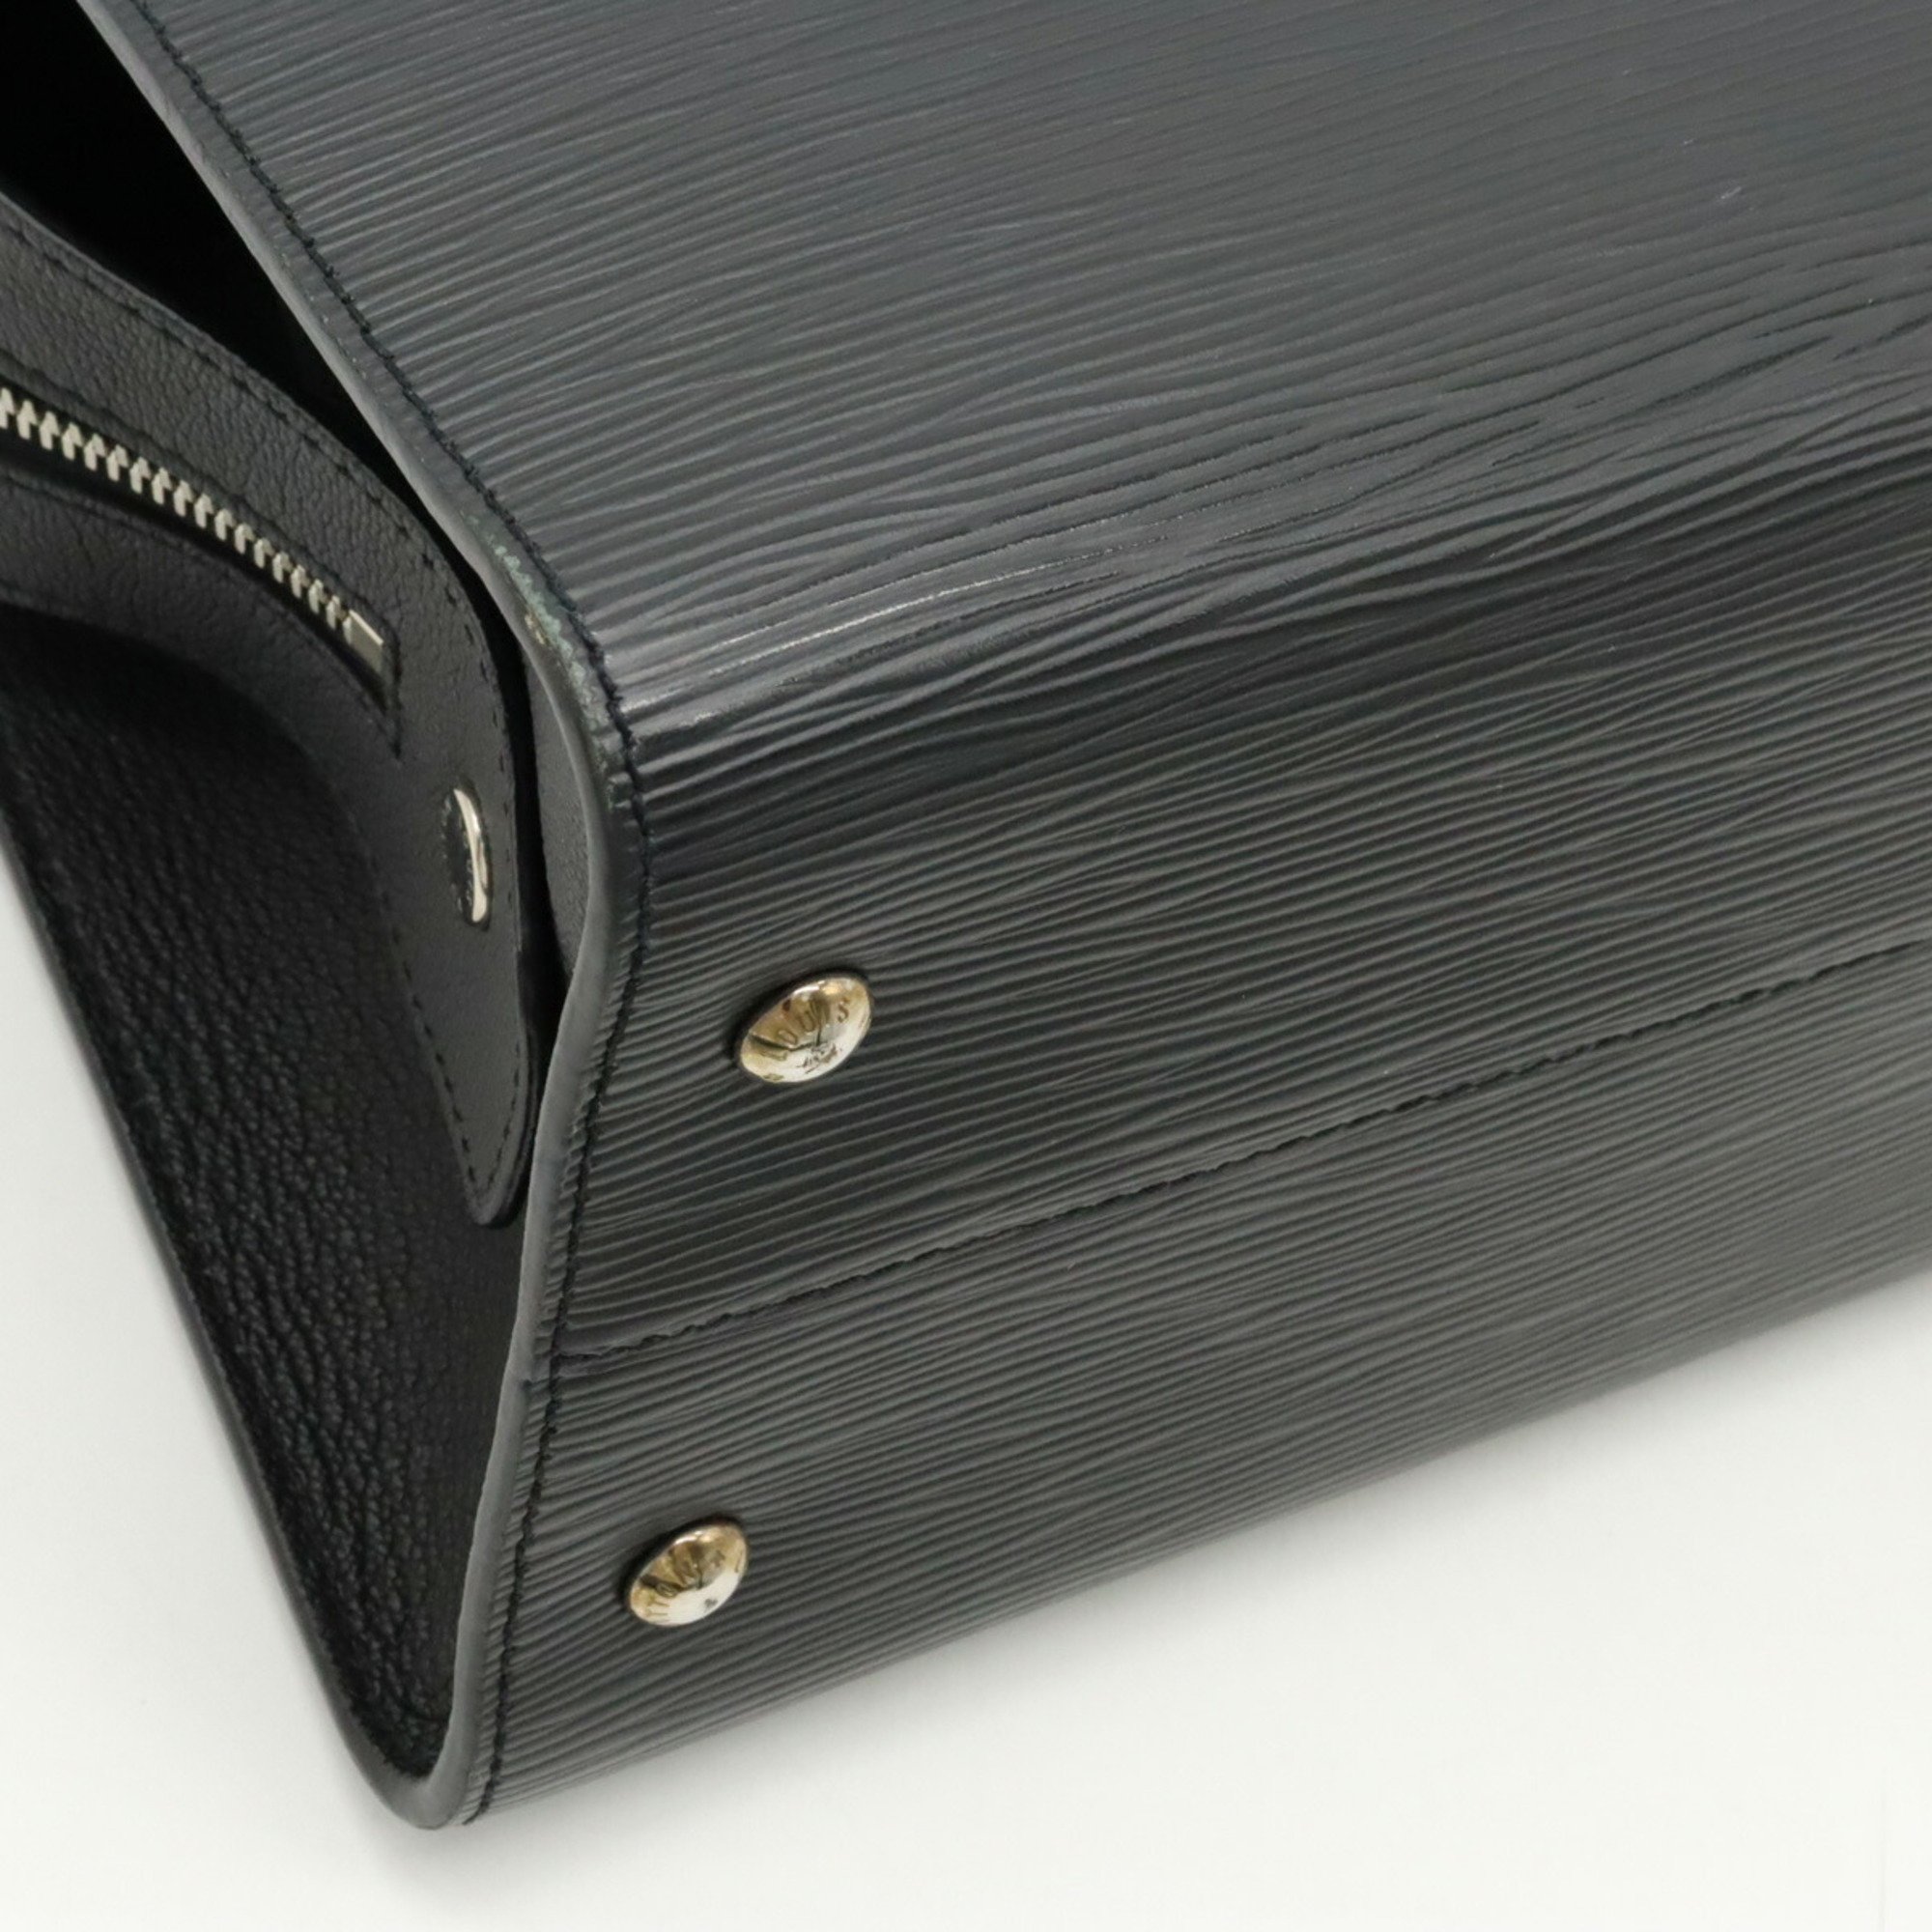 LOUIS VUITTON Epi Vaneau MM Handbag Shoulder Bag Noir Black M51238